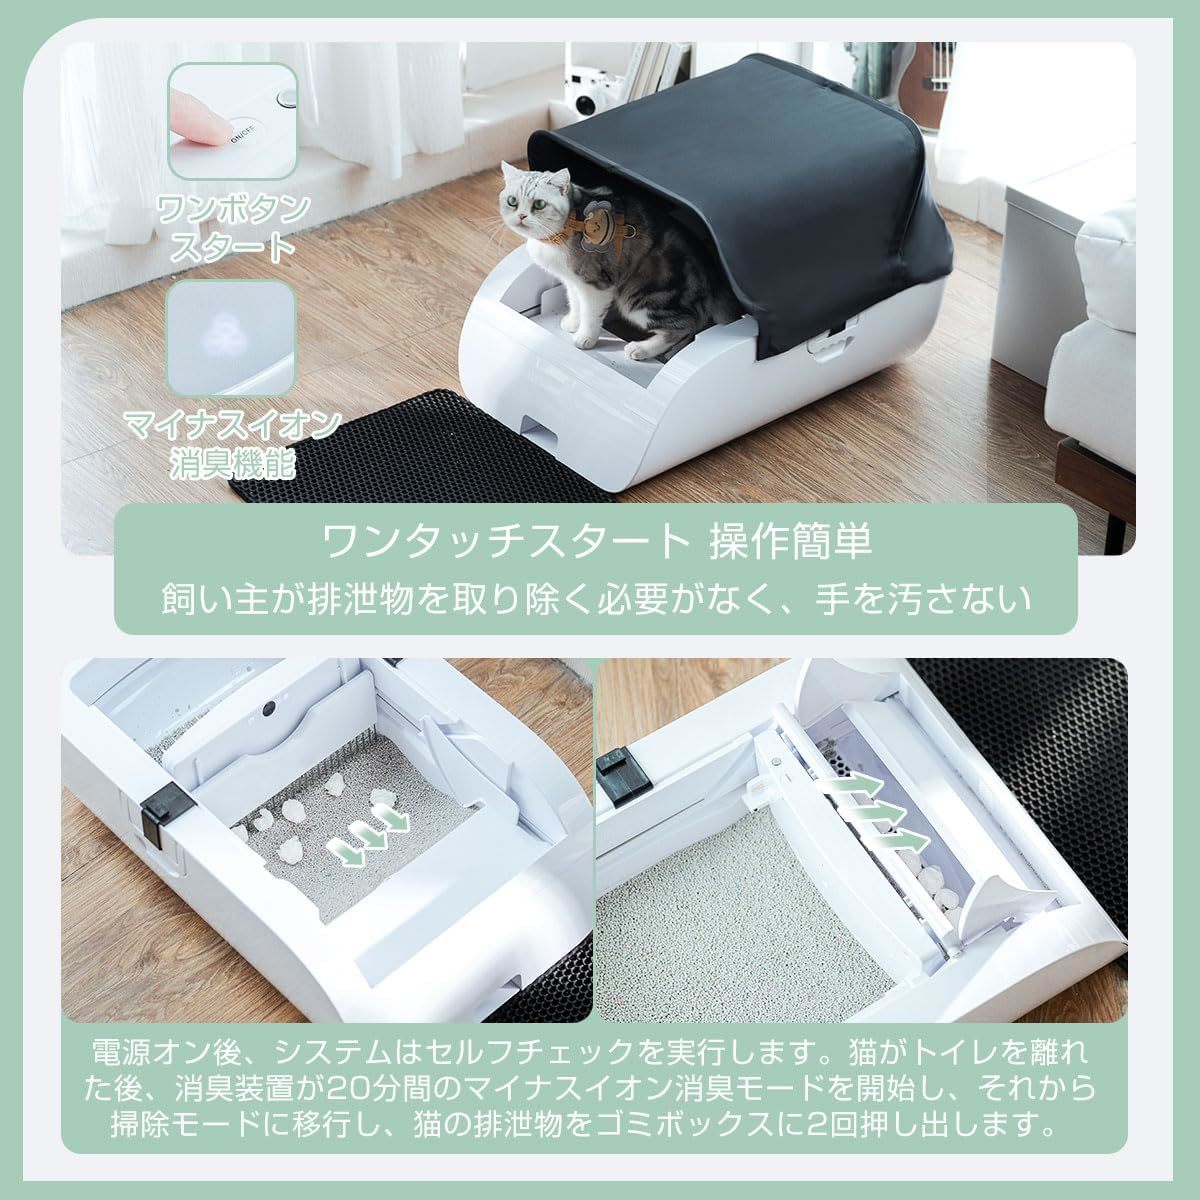 [ ограниченное количество распродажа ][ специализация ] кошка автоматика туалет кошка туалет встроенный аккумулятор имеется .. предотвращение супер большой пространство японский язык инструкция имеется безопасность сенсор имеется 